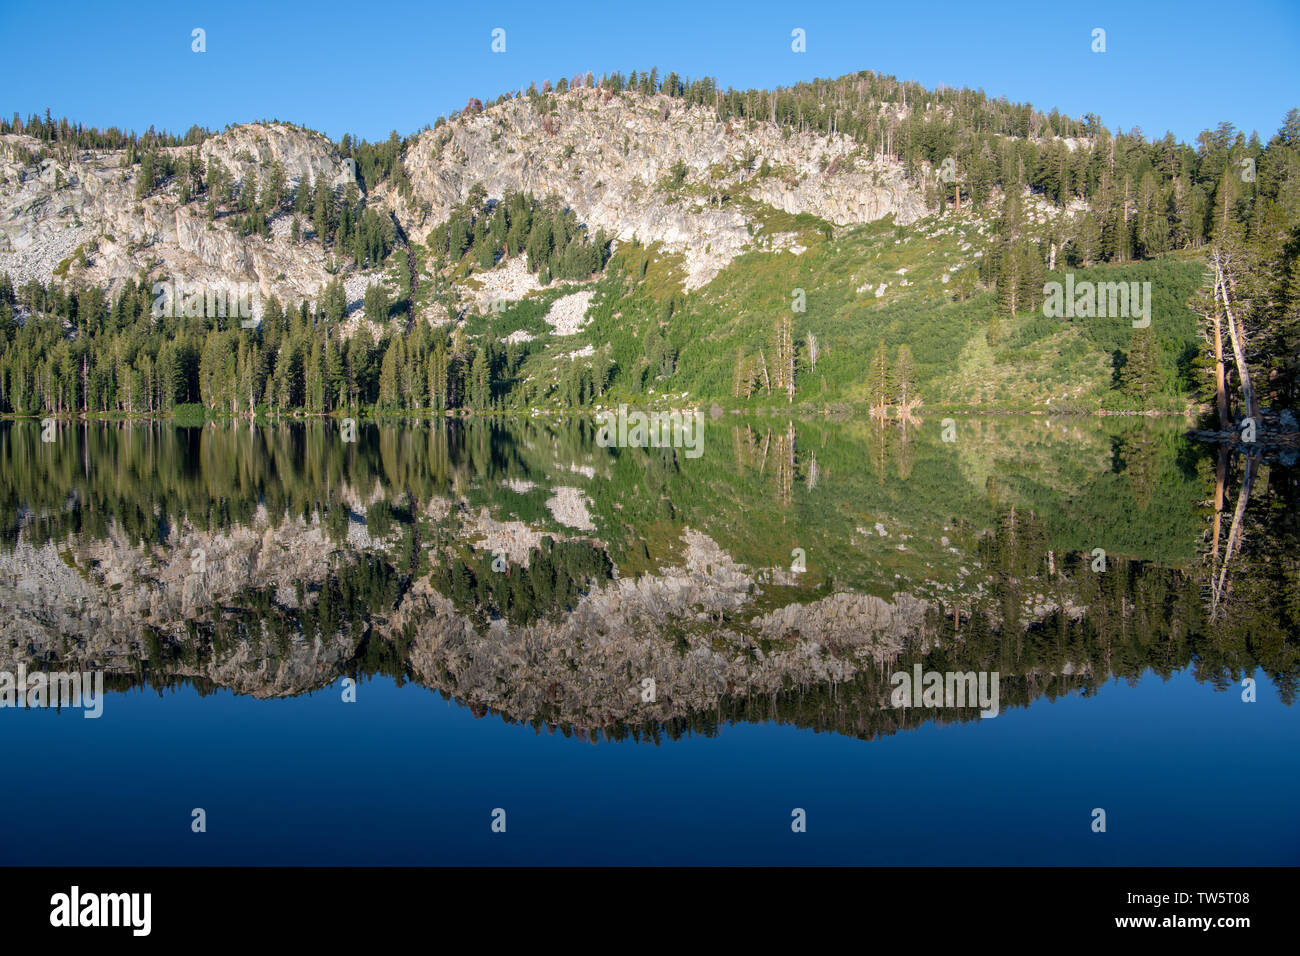 Tranquilo, perfectamente quieto lago alpino reflejando los pinos, montañas y cielo azul - Lago George, en las montañas de Sierra Nevada de California Foto de stock